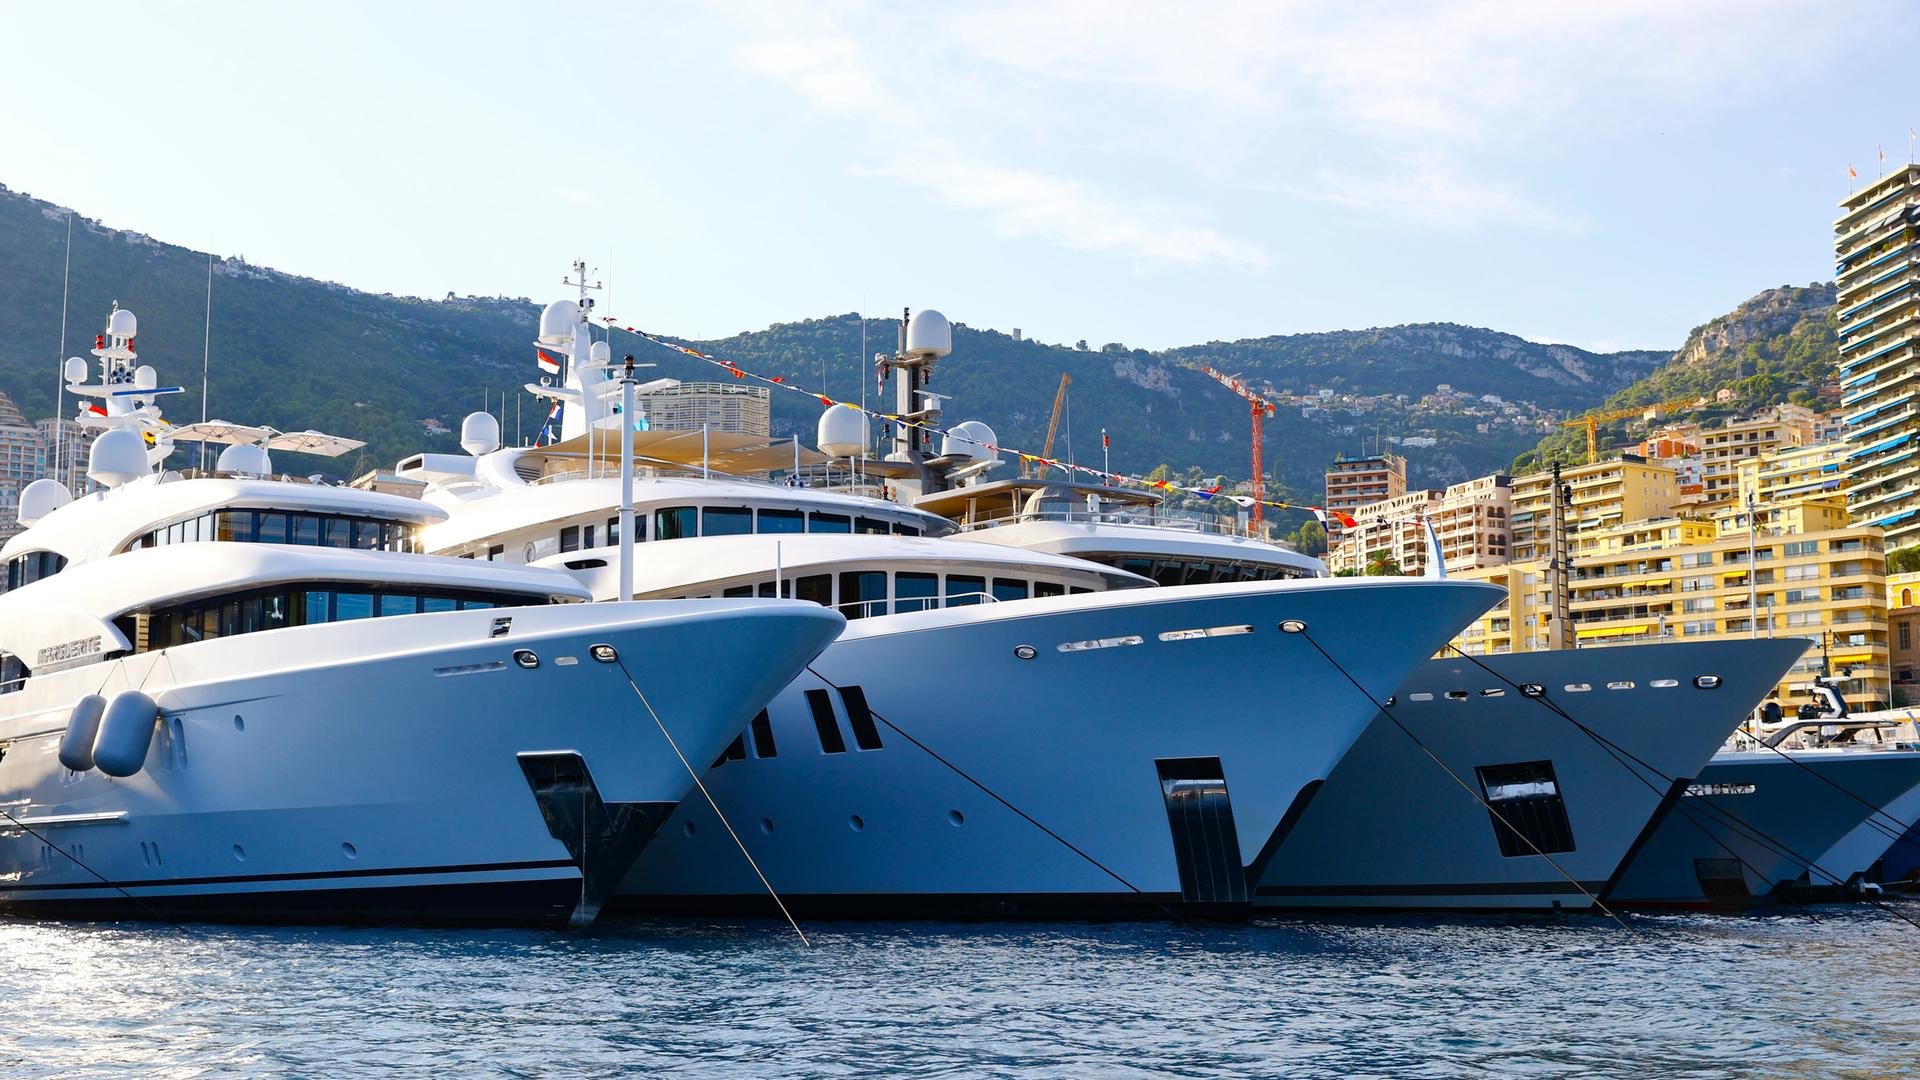 Mehrere Luxus-Motoryachten liegen im Hafen von Monaco.